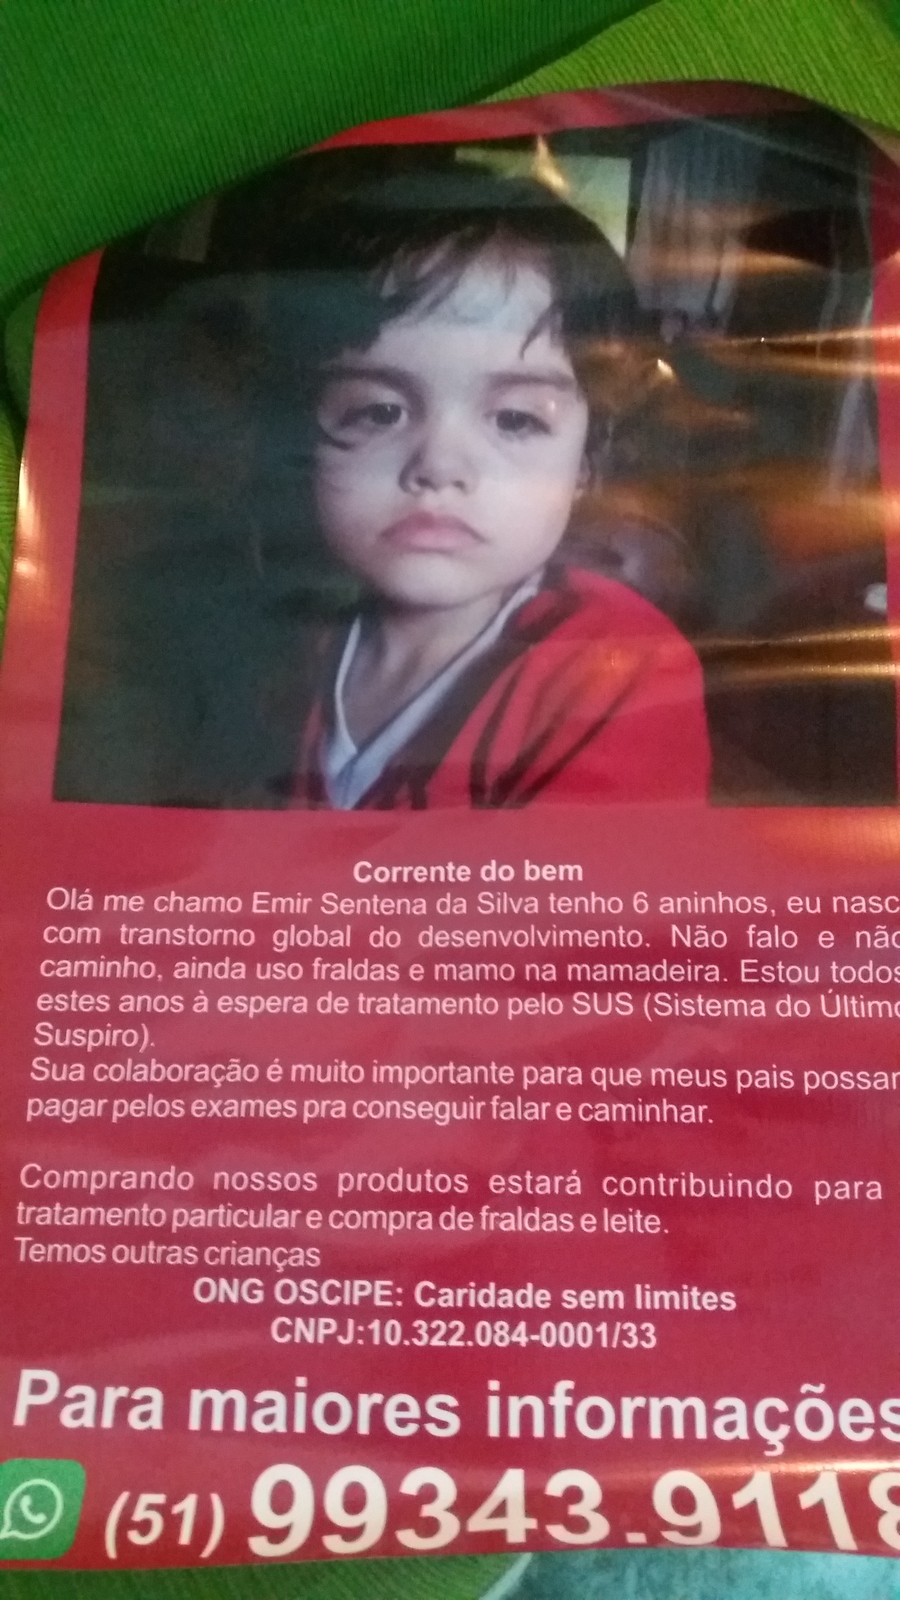 Vaquinha Online - Ajude essa crianca linda.